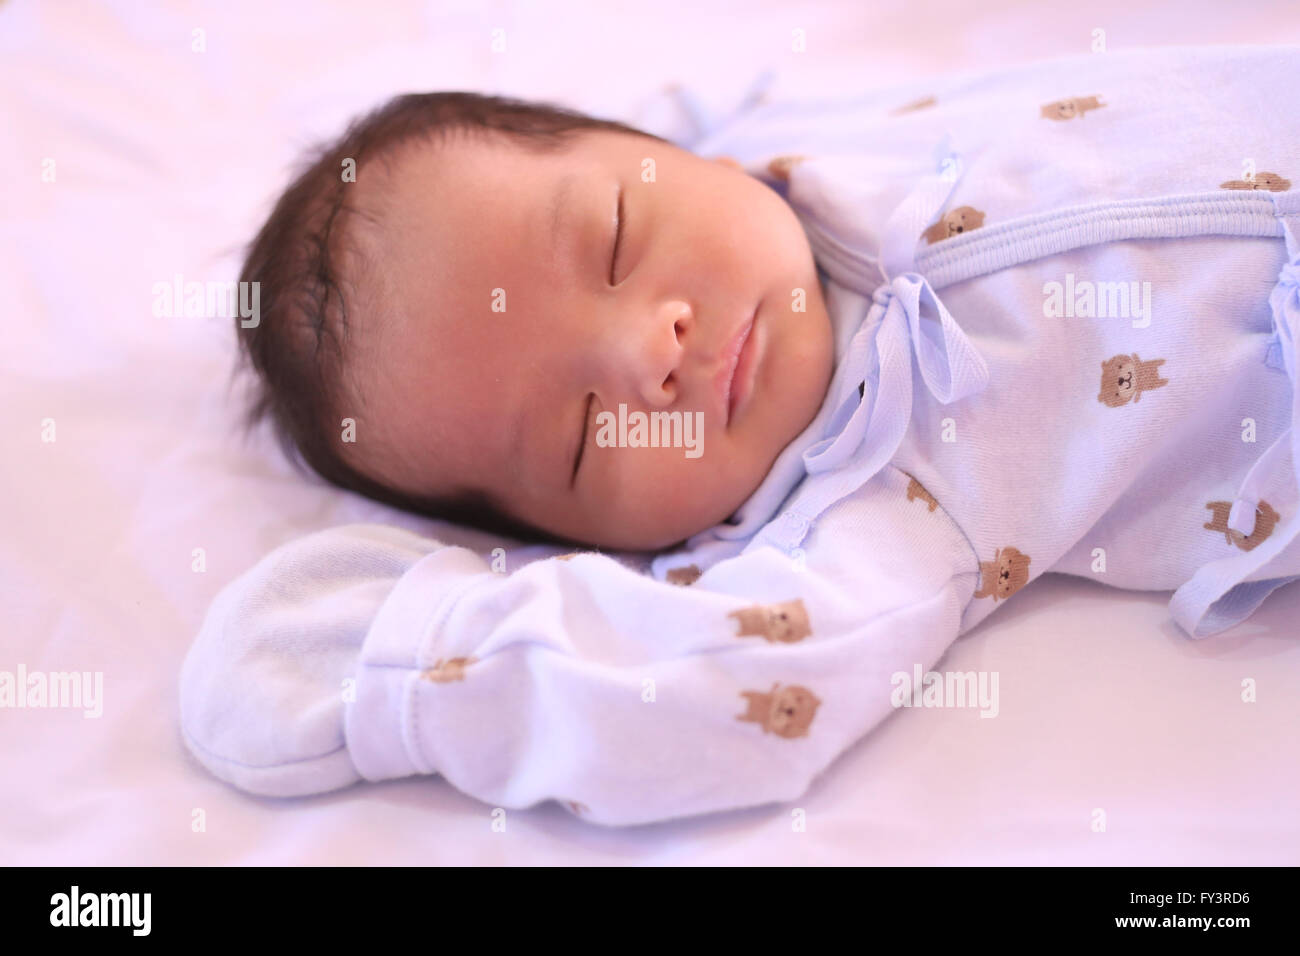 Bébé dort asiatique,nouveau-né à cet âge veulent dormir autant à la croissance. Banque D'Images